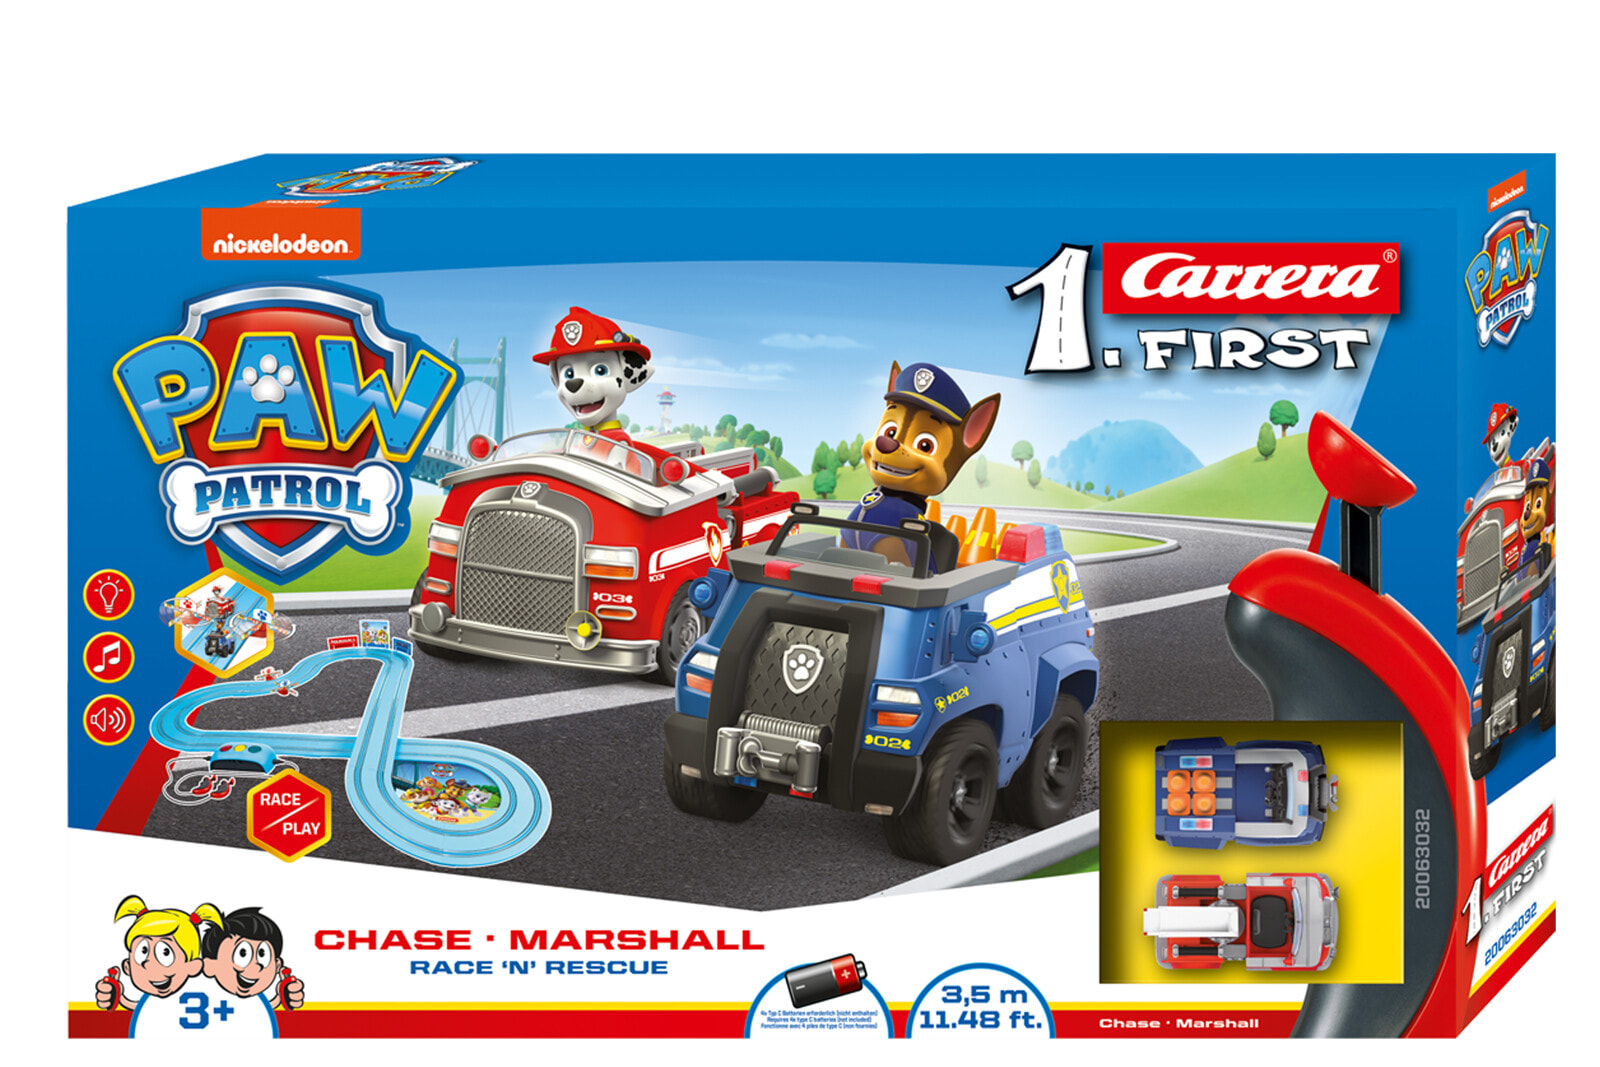 Carrera Paw Patrol Race N Rescue трек для игрушечных машинок Пластик 20063032